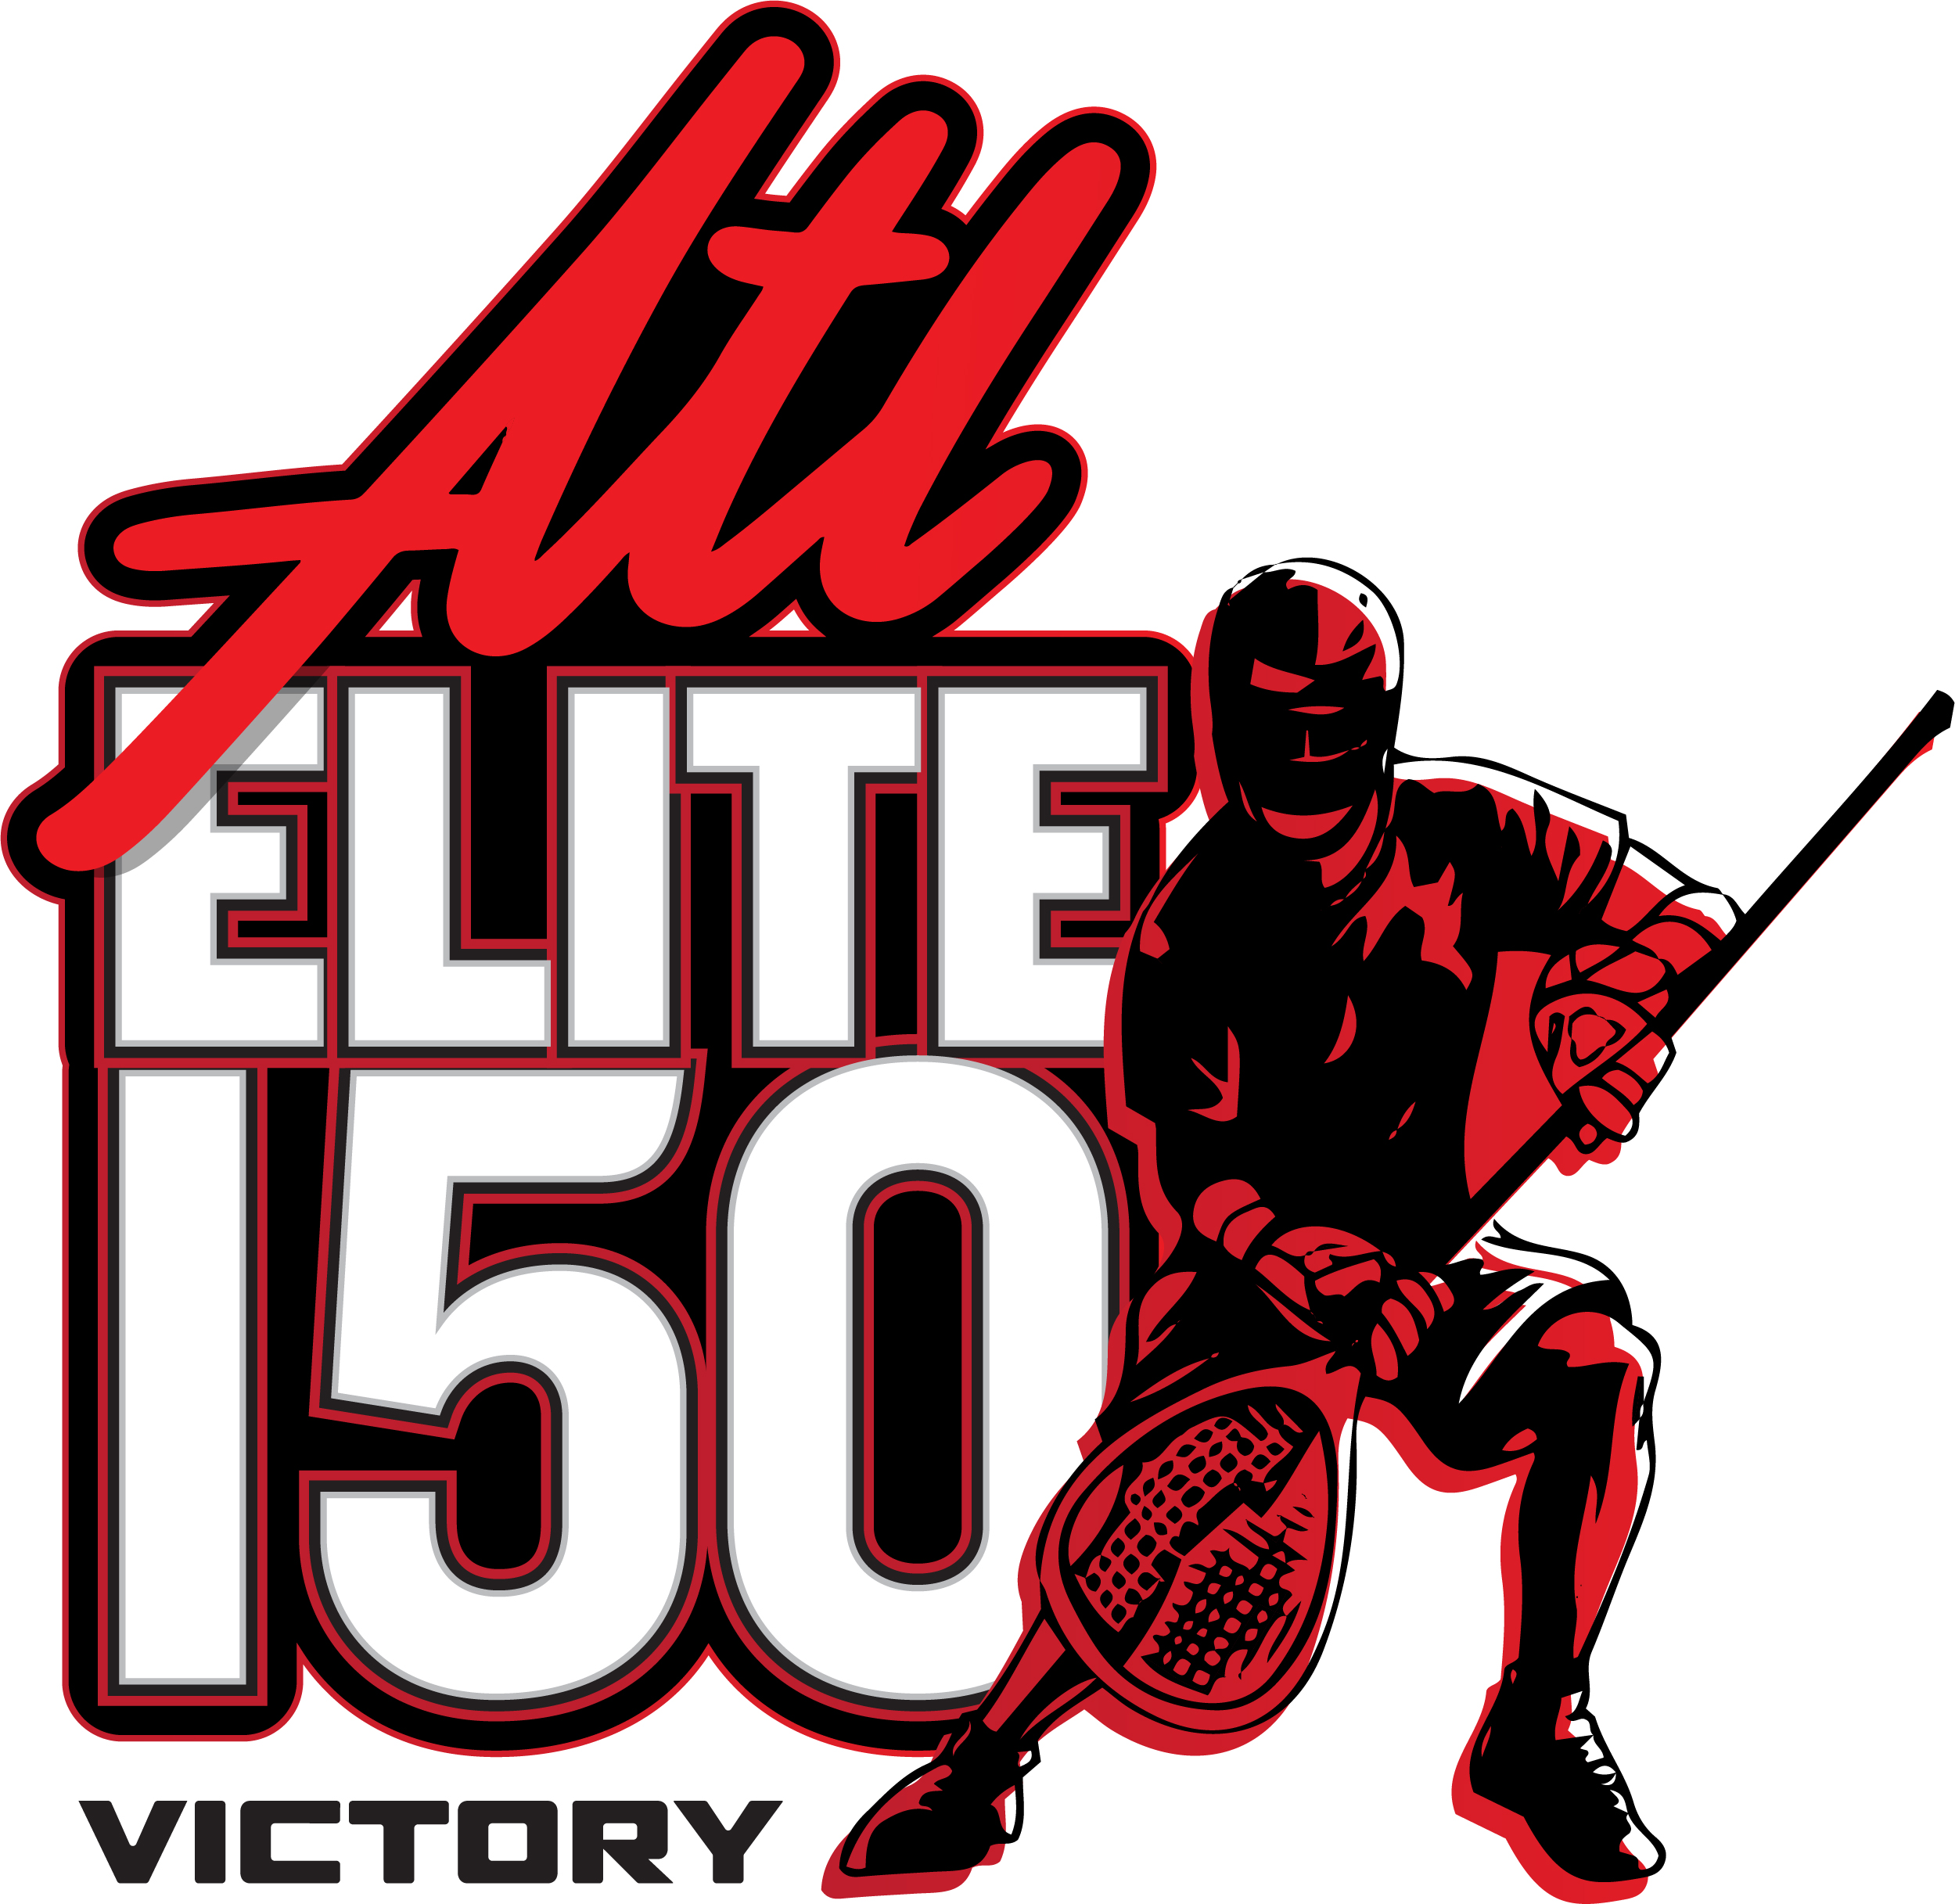 ATL Elite 150 Showcase